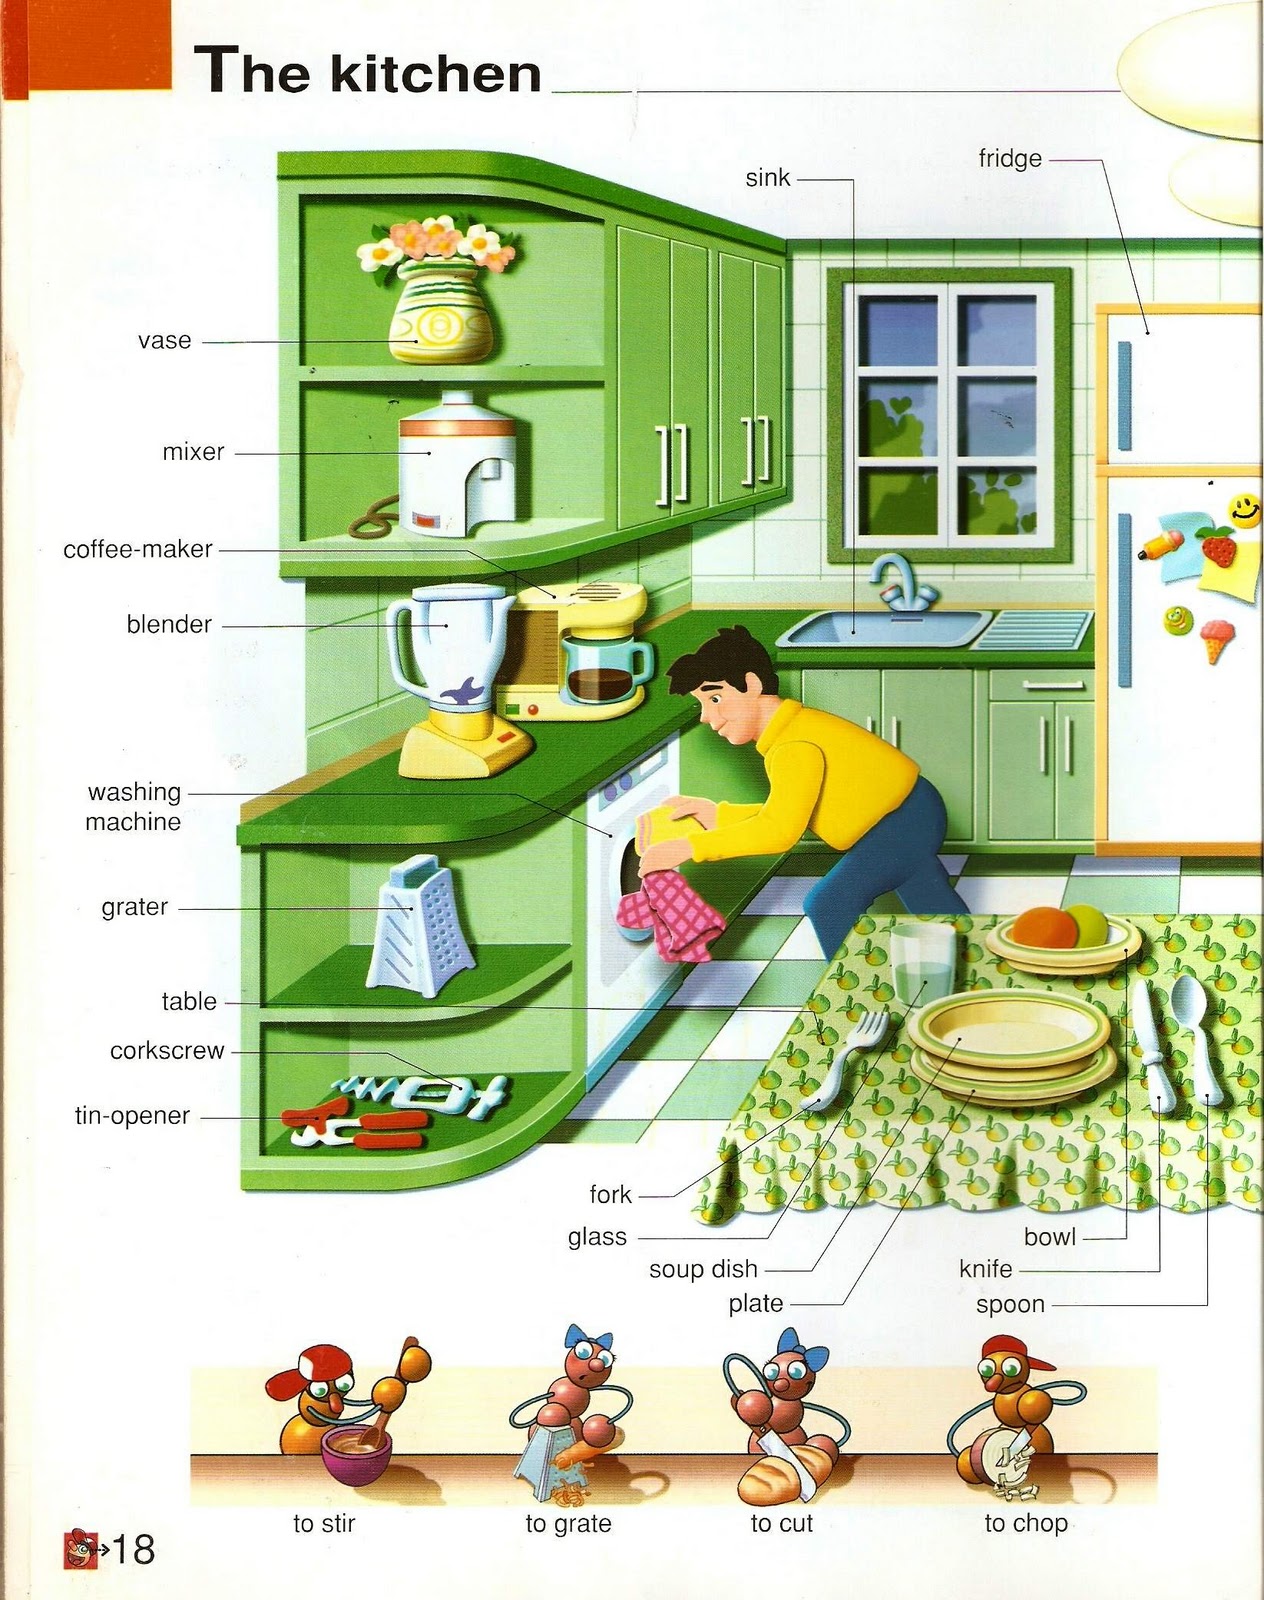 Лексика на английском. Тема кухня на английском. Кухонная мебель по английскому языку. Кухня Vocabulary. Кухня лексика на английском.